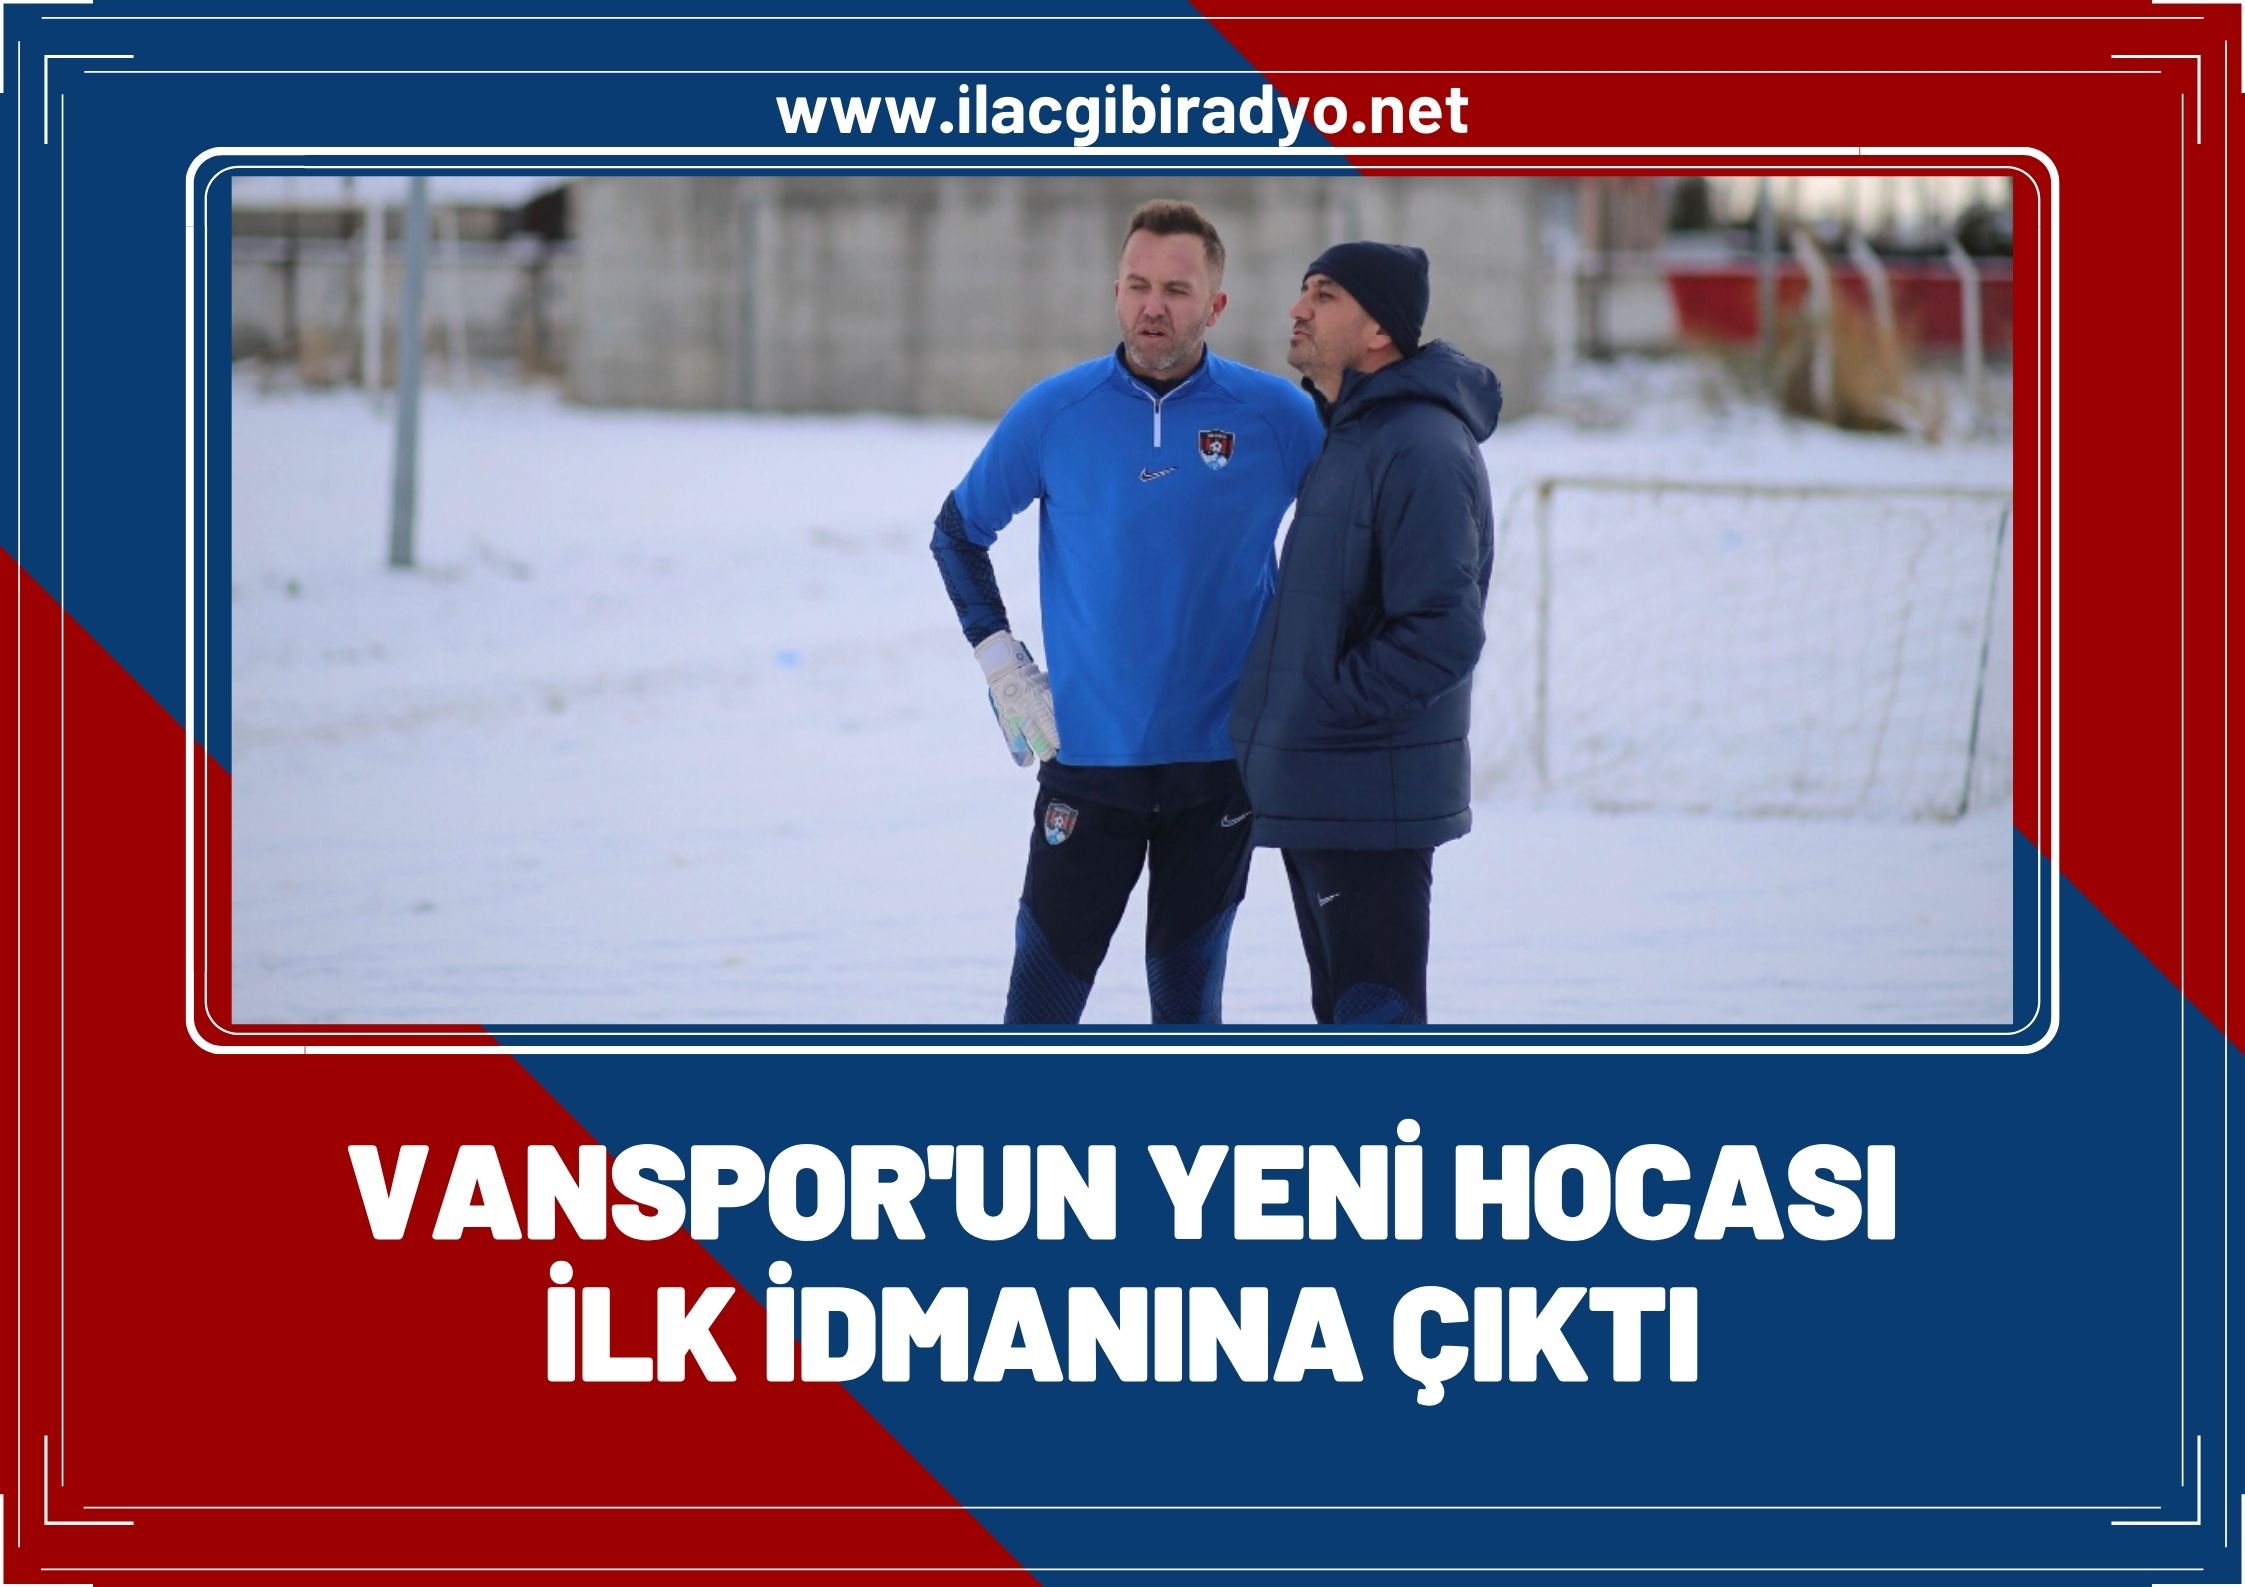 Van Spor yeni hocası Ersin Aka ile ilk idmanına çıktı